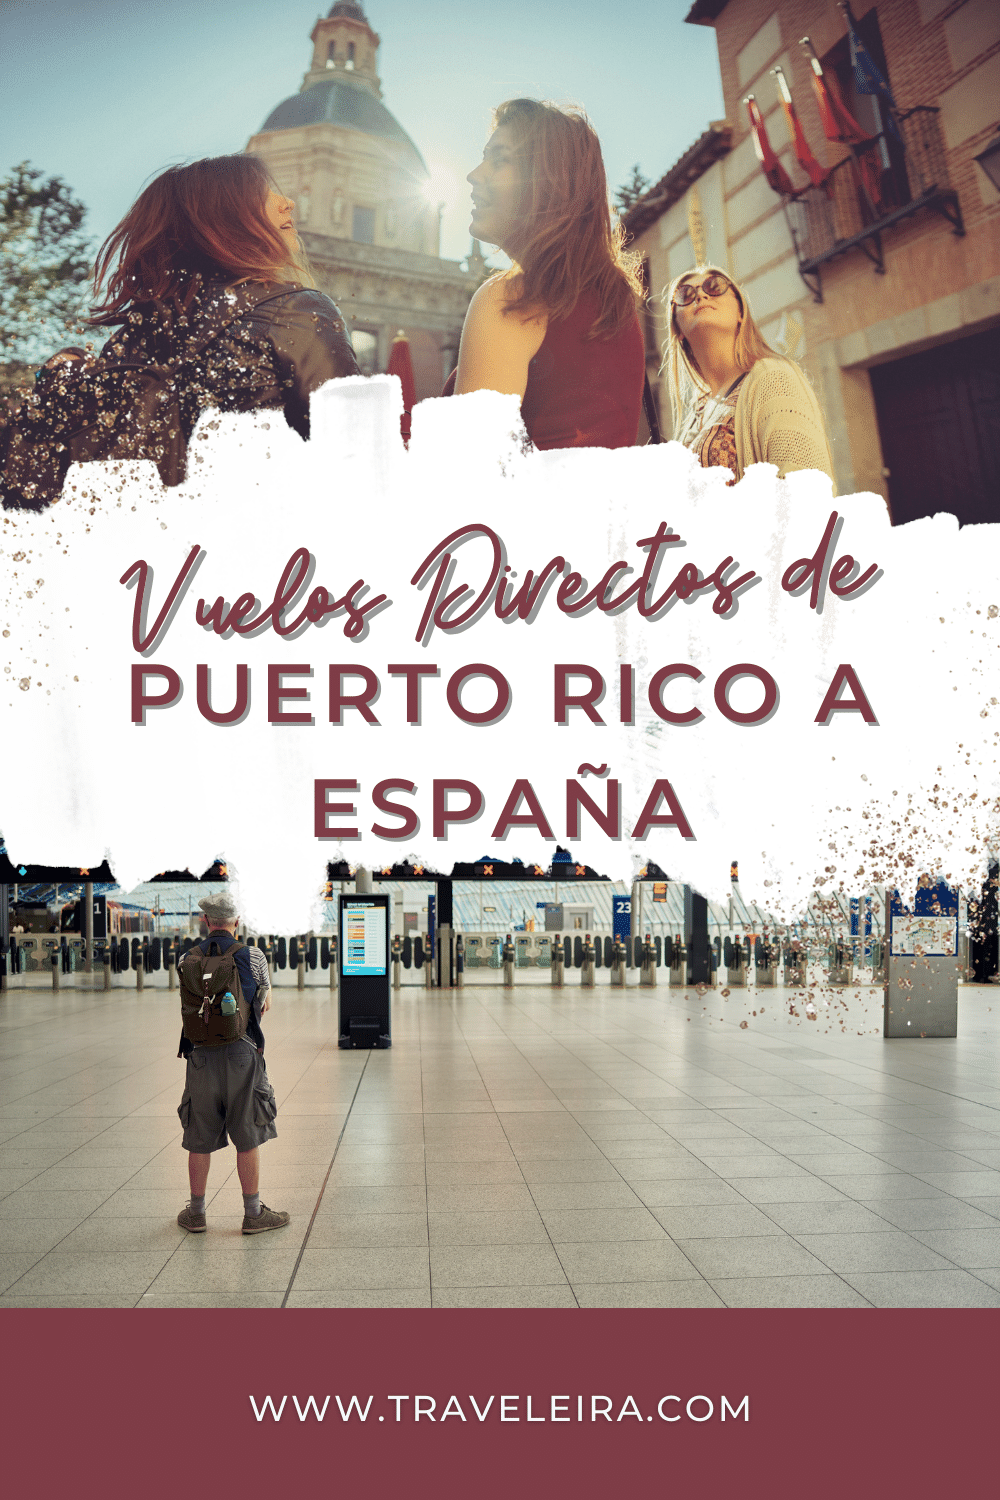 Cada día los vuelos directos de Puerto Rico a España se hacen más populares. Descubre qué hacer en tu viaje a Madrid.